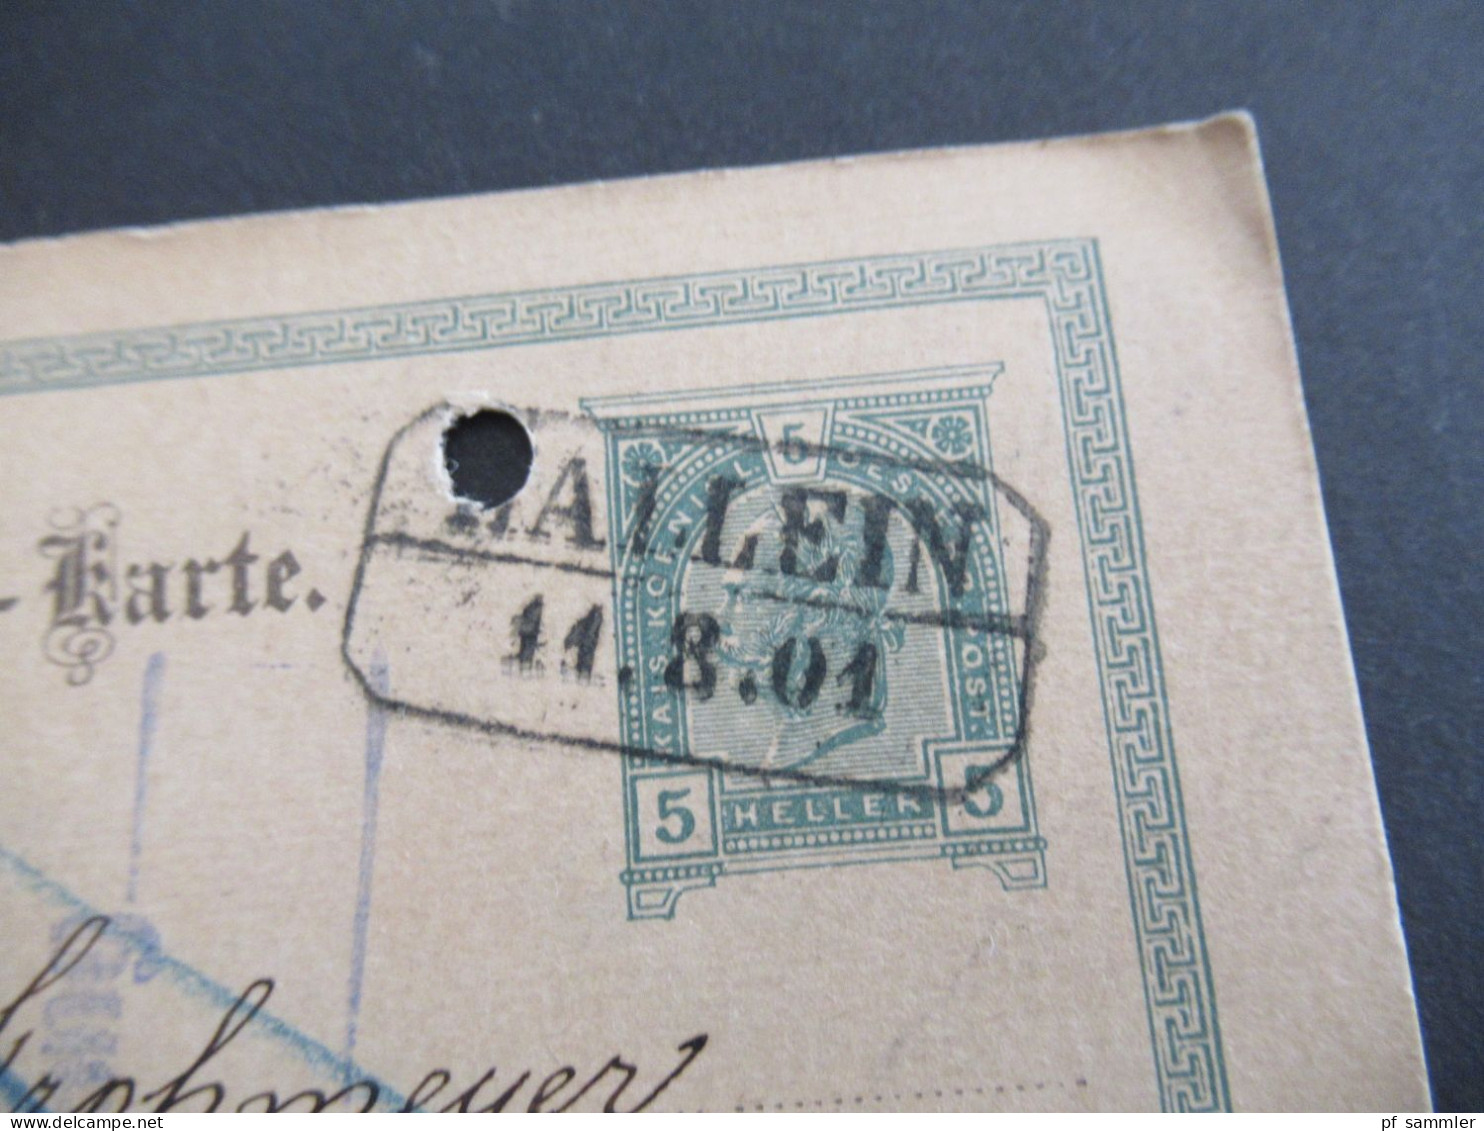 Österreich 1901 Ganzsache 5 Heller Mit Stempel Ra2 Hallein Nach Konstanz Baden Mit Ank. Stempel - Cartes Postales